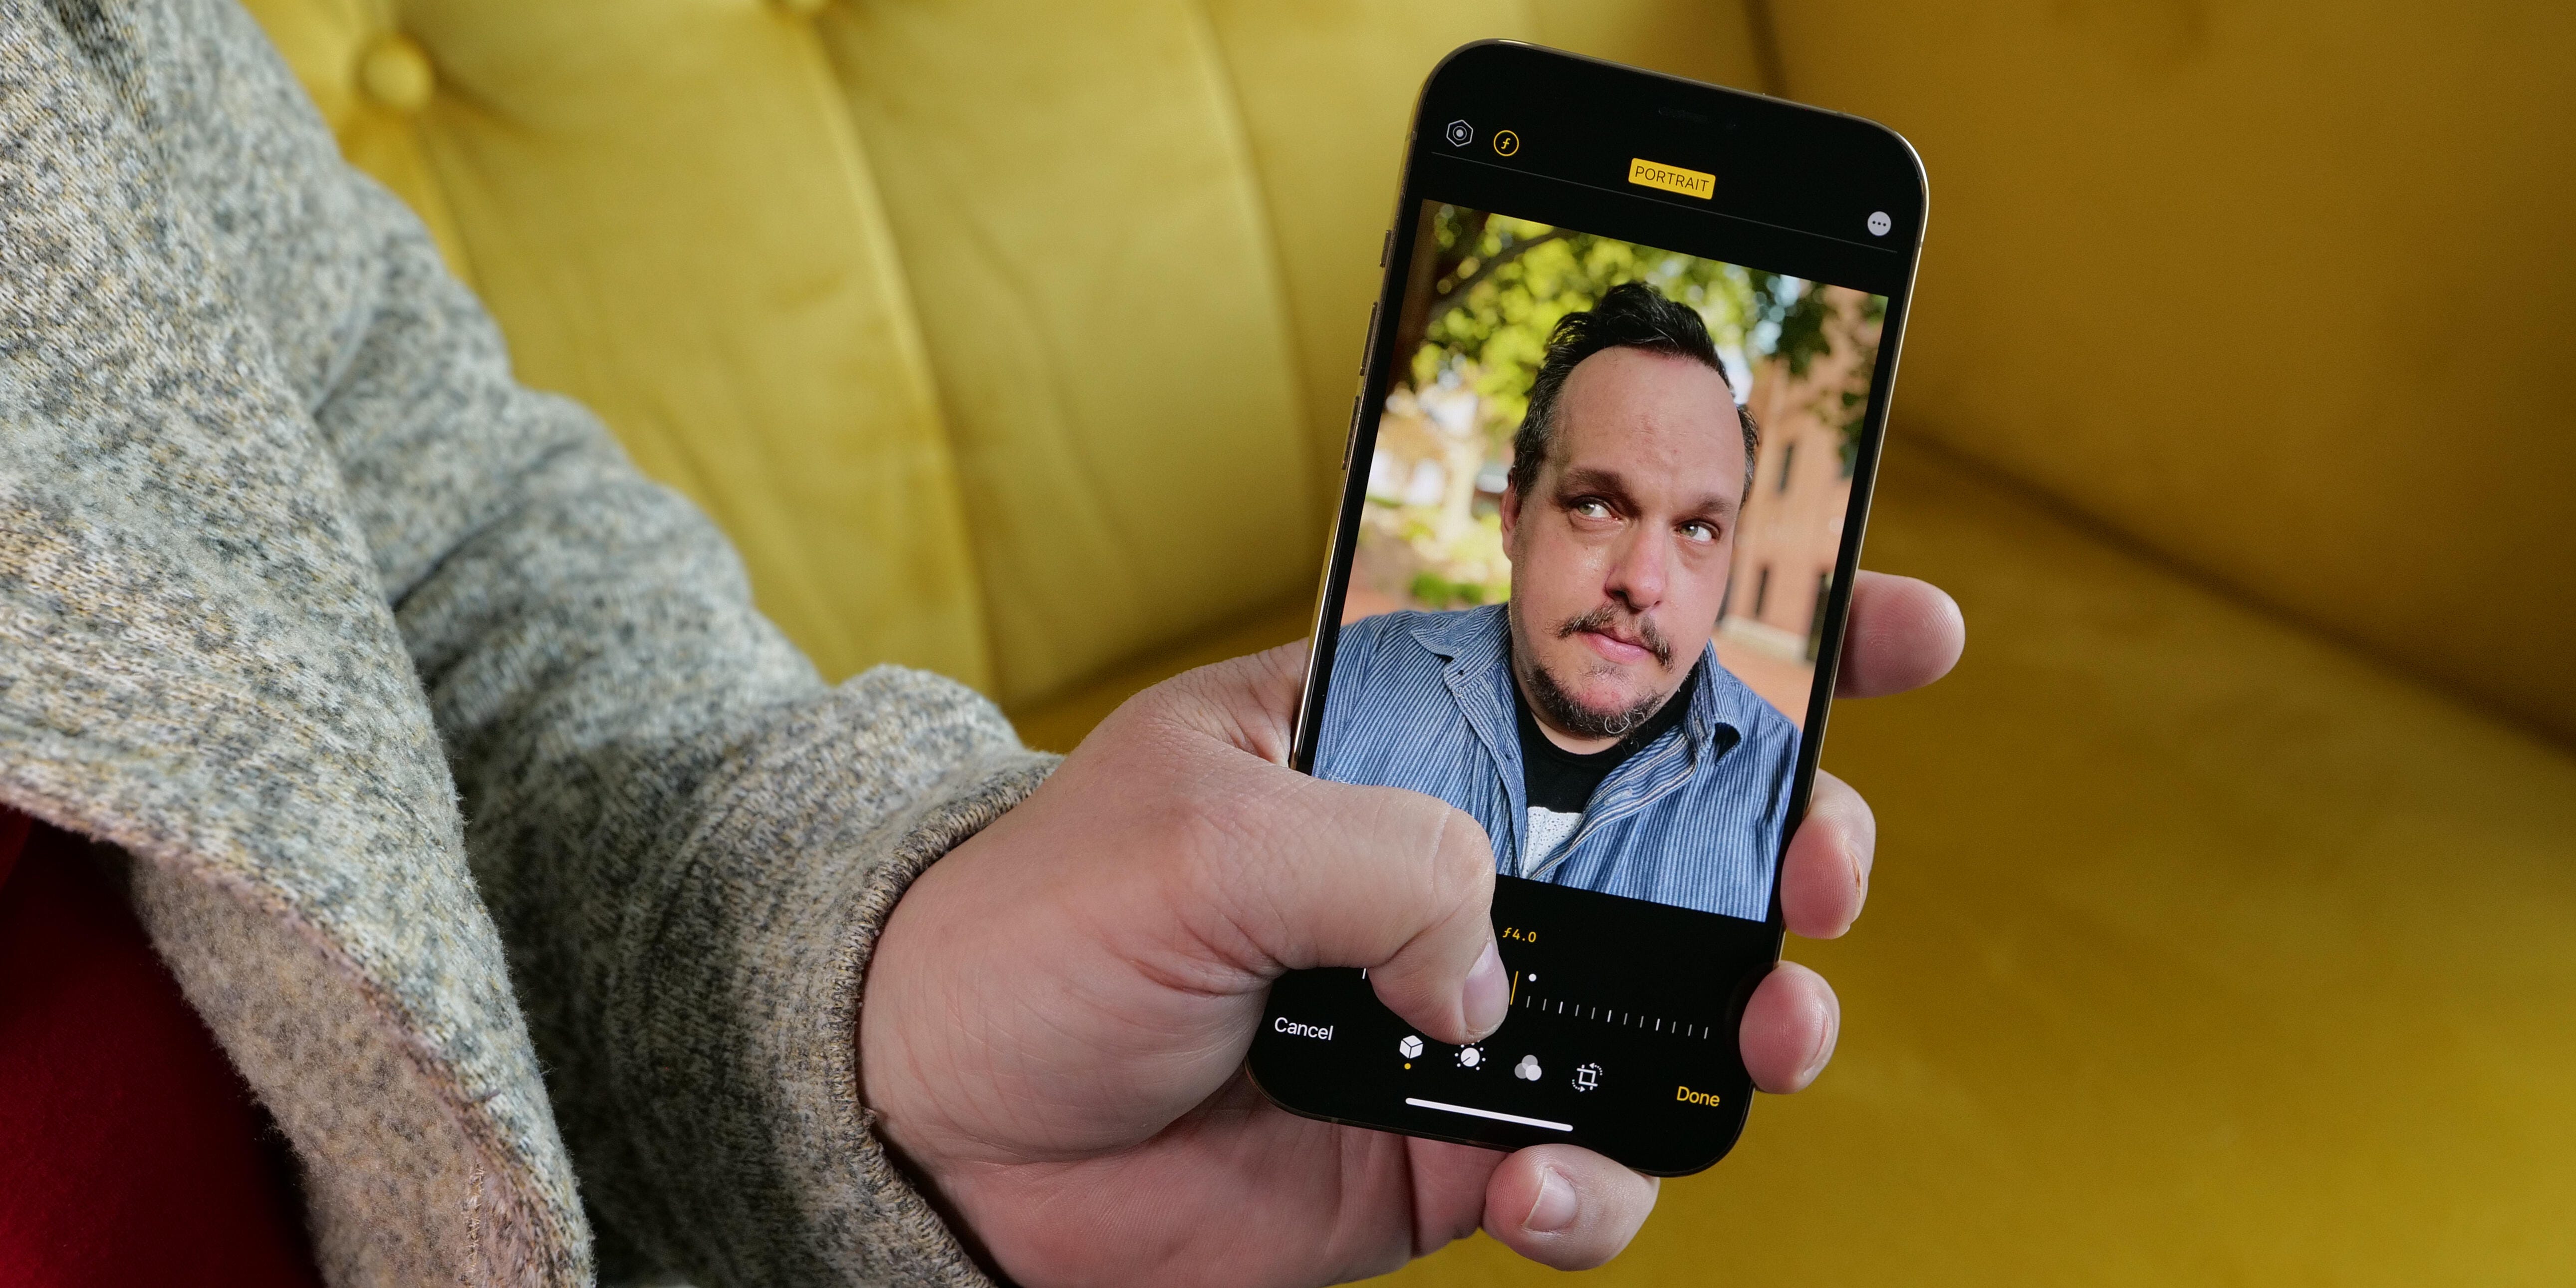 Portrait mode trên iPhone có thể làm cho bức ảnh của bạn trở nên sống động hơn bao giờ hết, nhưng bạn có biết làm thế nào để sử dụng nó đúng cách không? Hãy xem qua hình ảnh để tìm hiểu cách tối ưu hóa chế độ này và tạo ra những bức ảnh tuyệt vời.